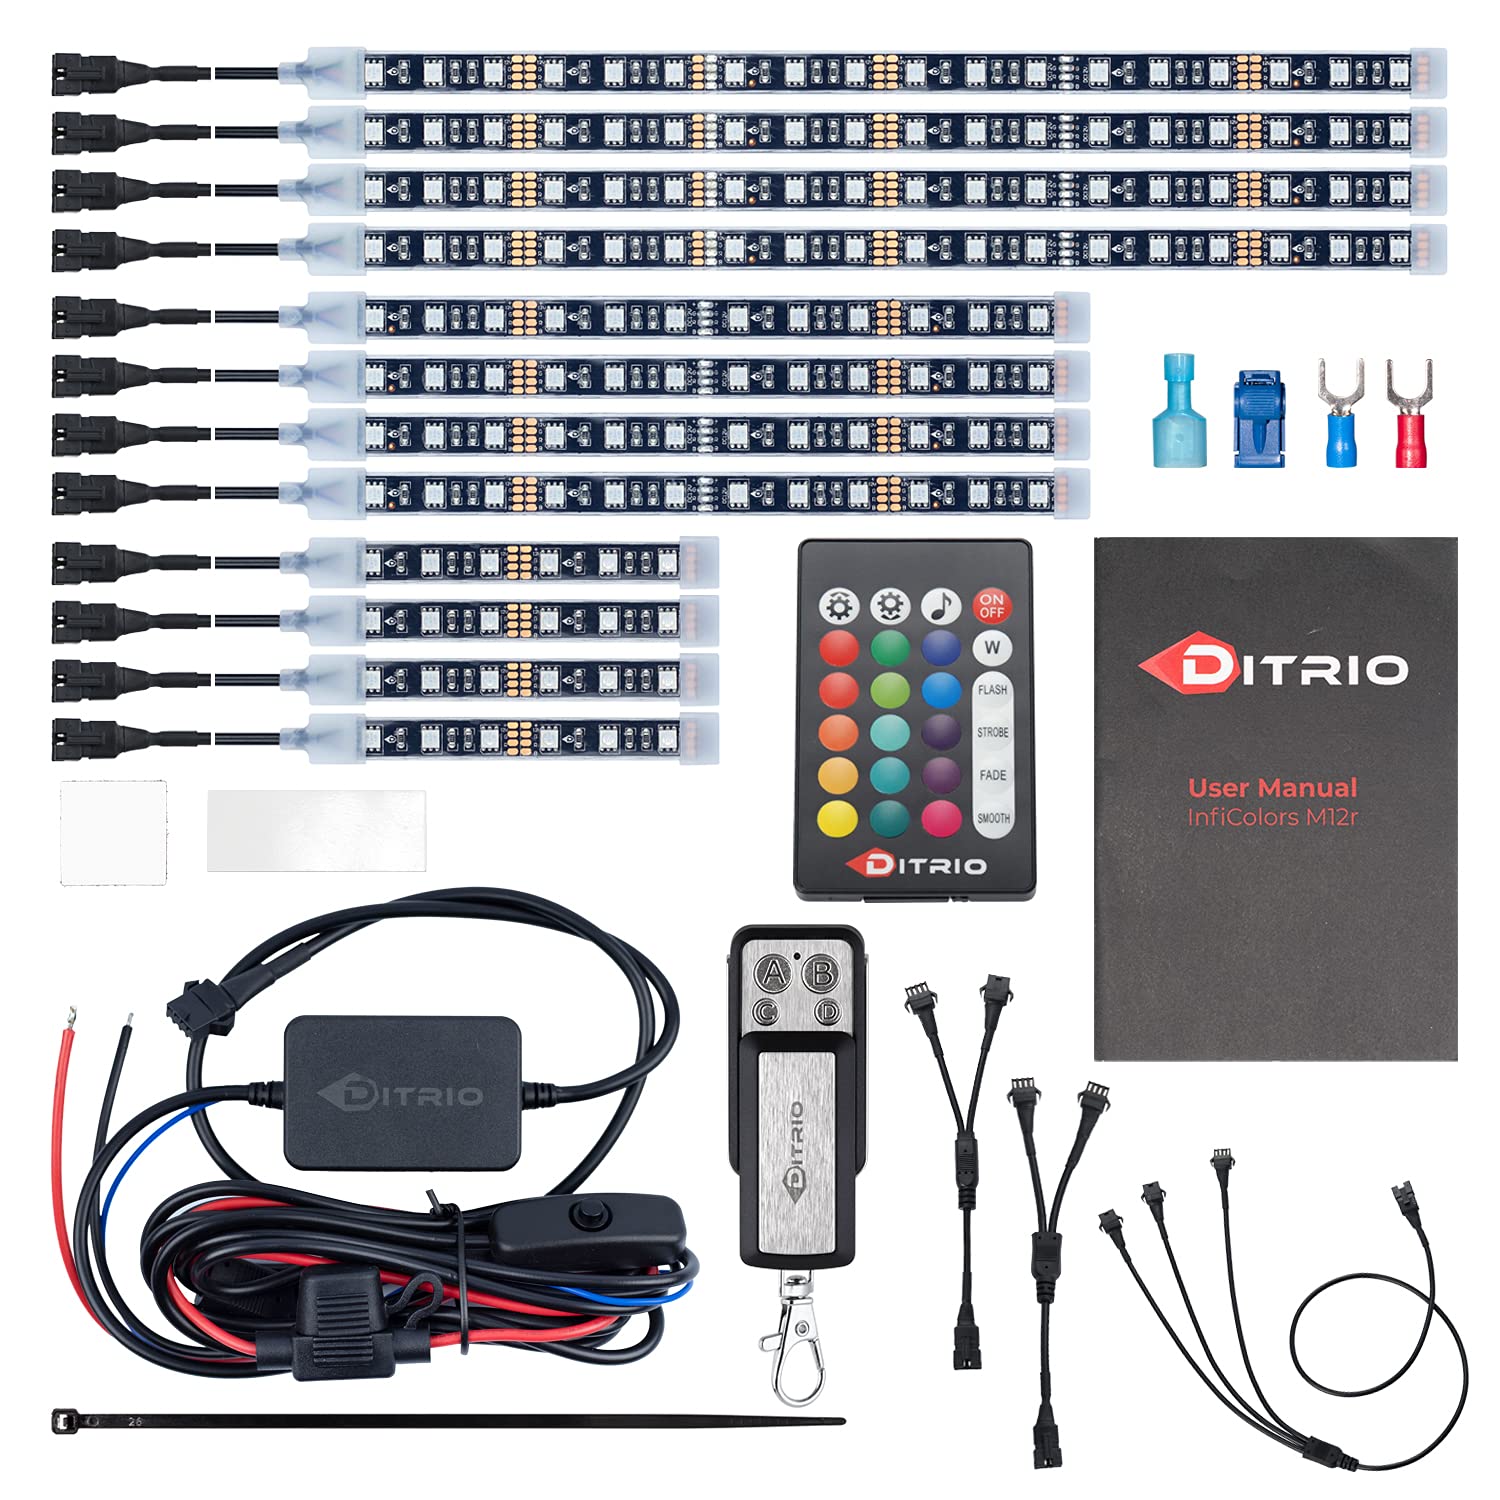 DITRIO 12pcs RGB LED Strip Light Kit - Best for Safe Rides